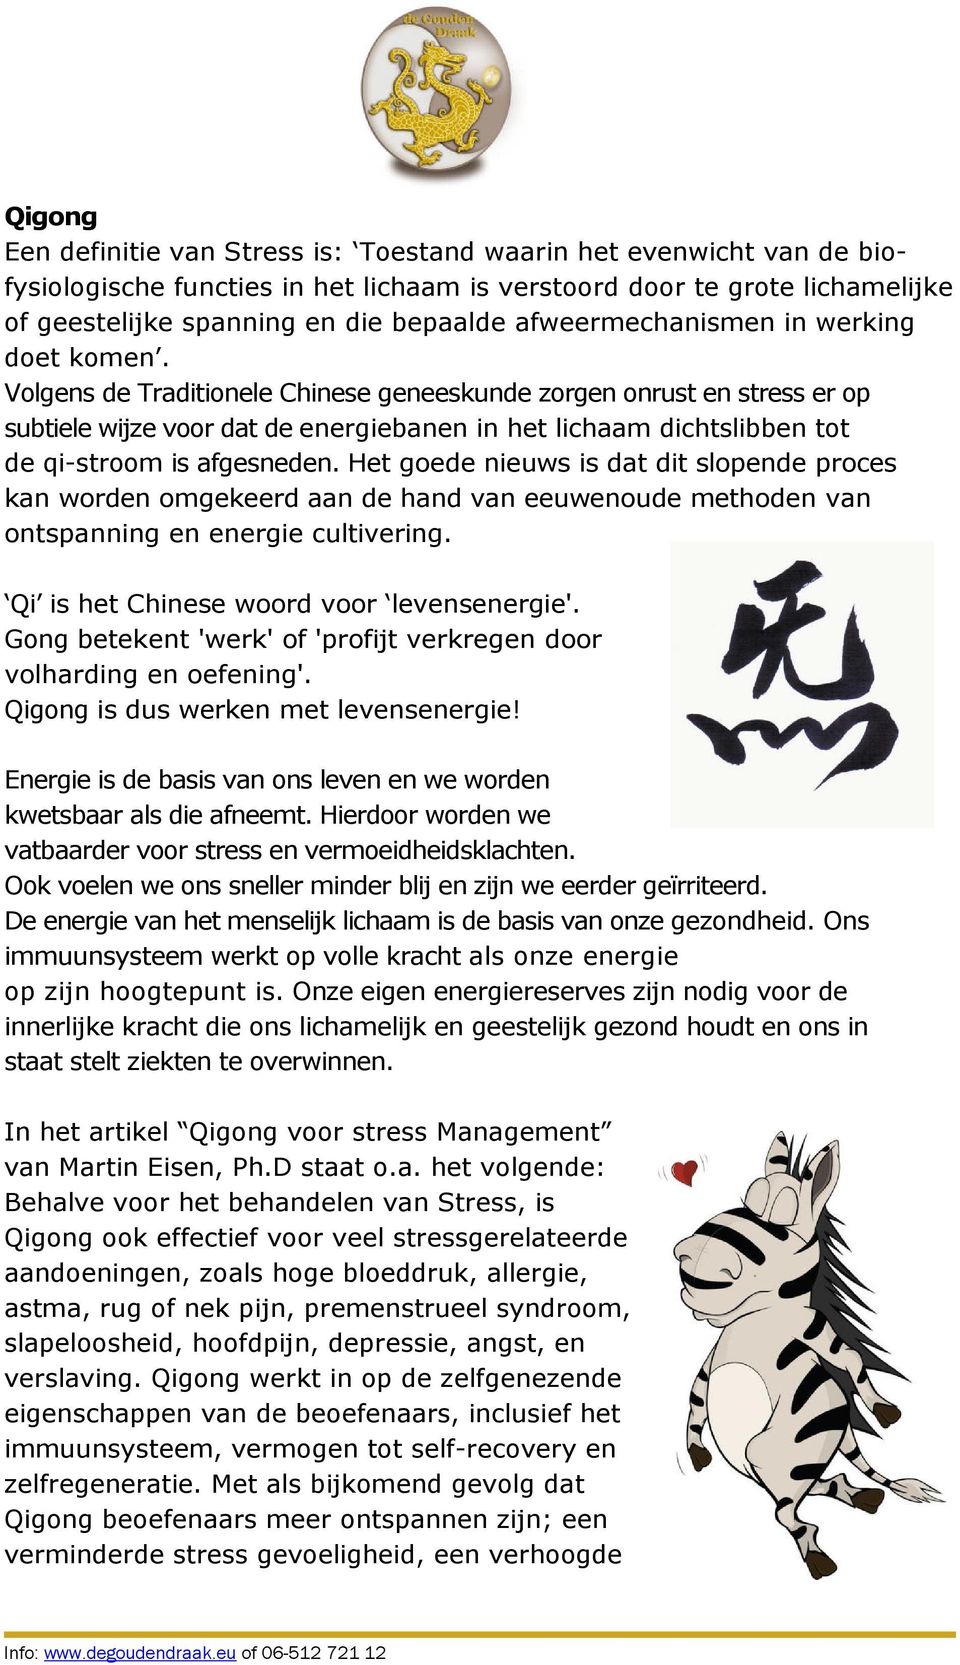 Volgens de Traditionele Chinese geneeskunde zorgen onrust en stress er op subtiele wijze voor dat de energiebanen in het lichaam dichtslibben tot de qi-stroom is afgesneden.